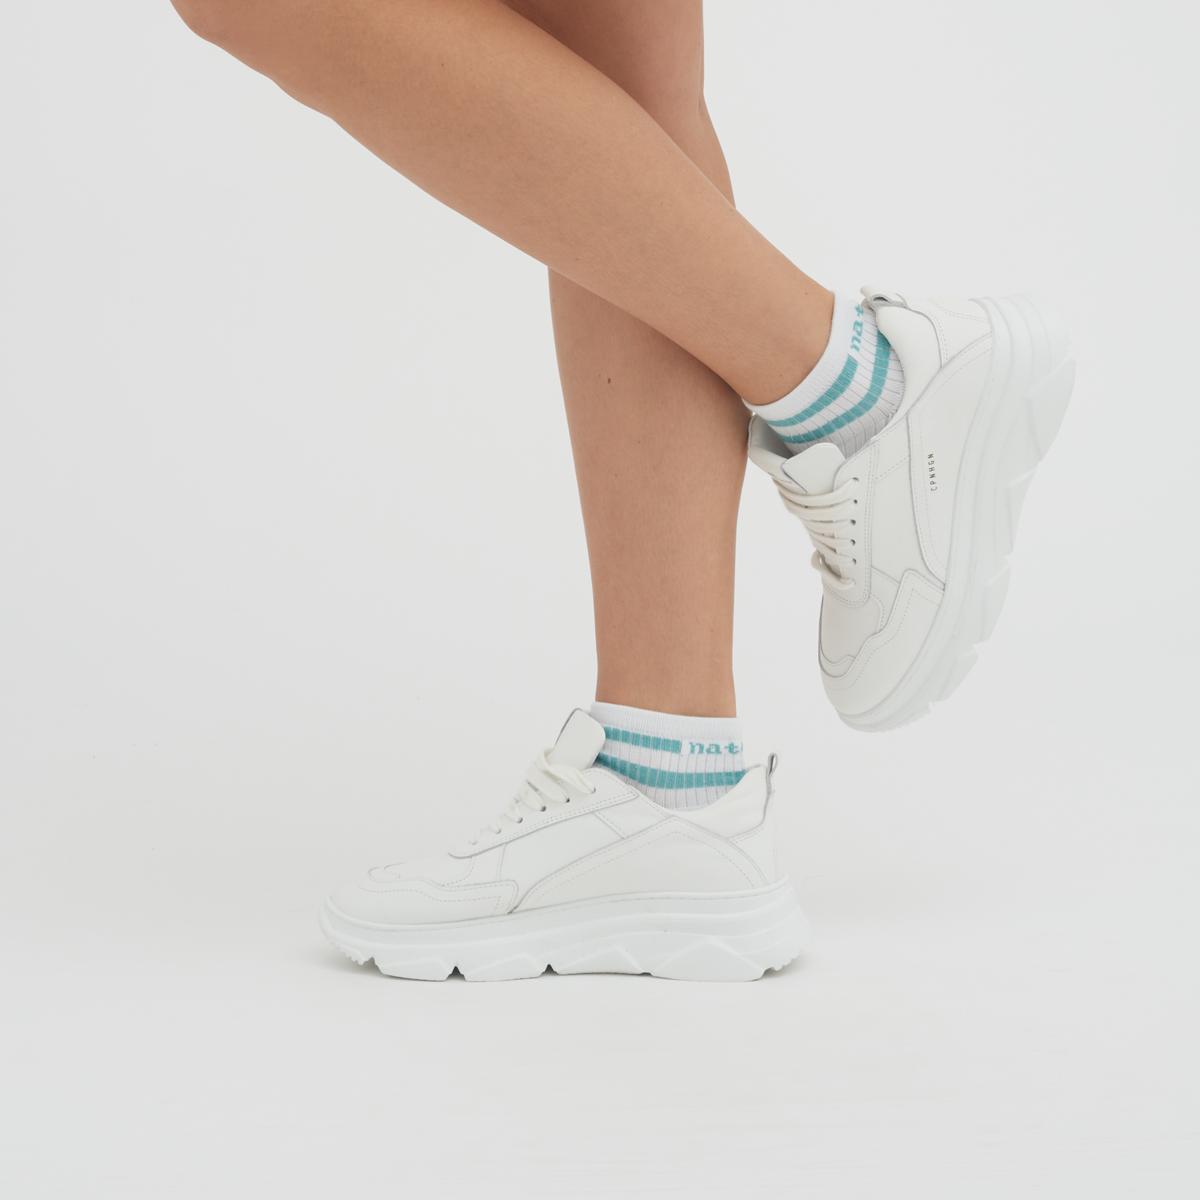 Gestreift Hohe Sneaker-Socken, 2er Pack Unisex ORELL